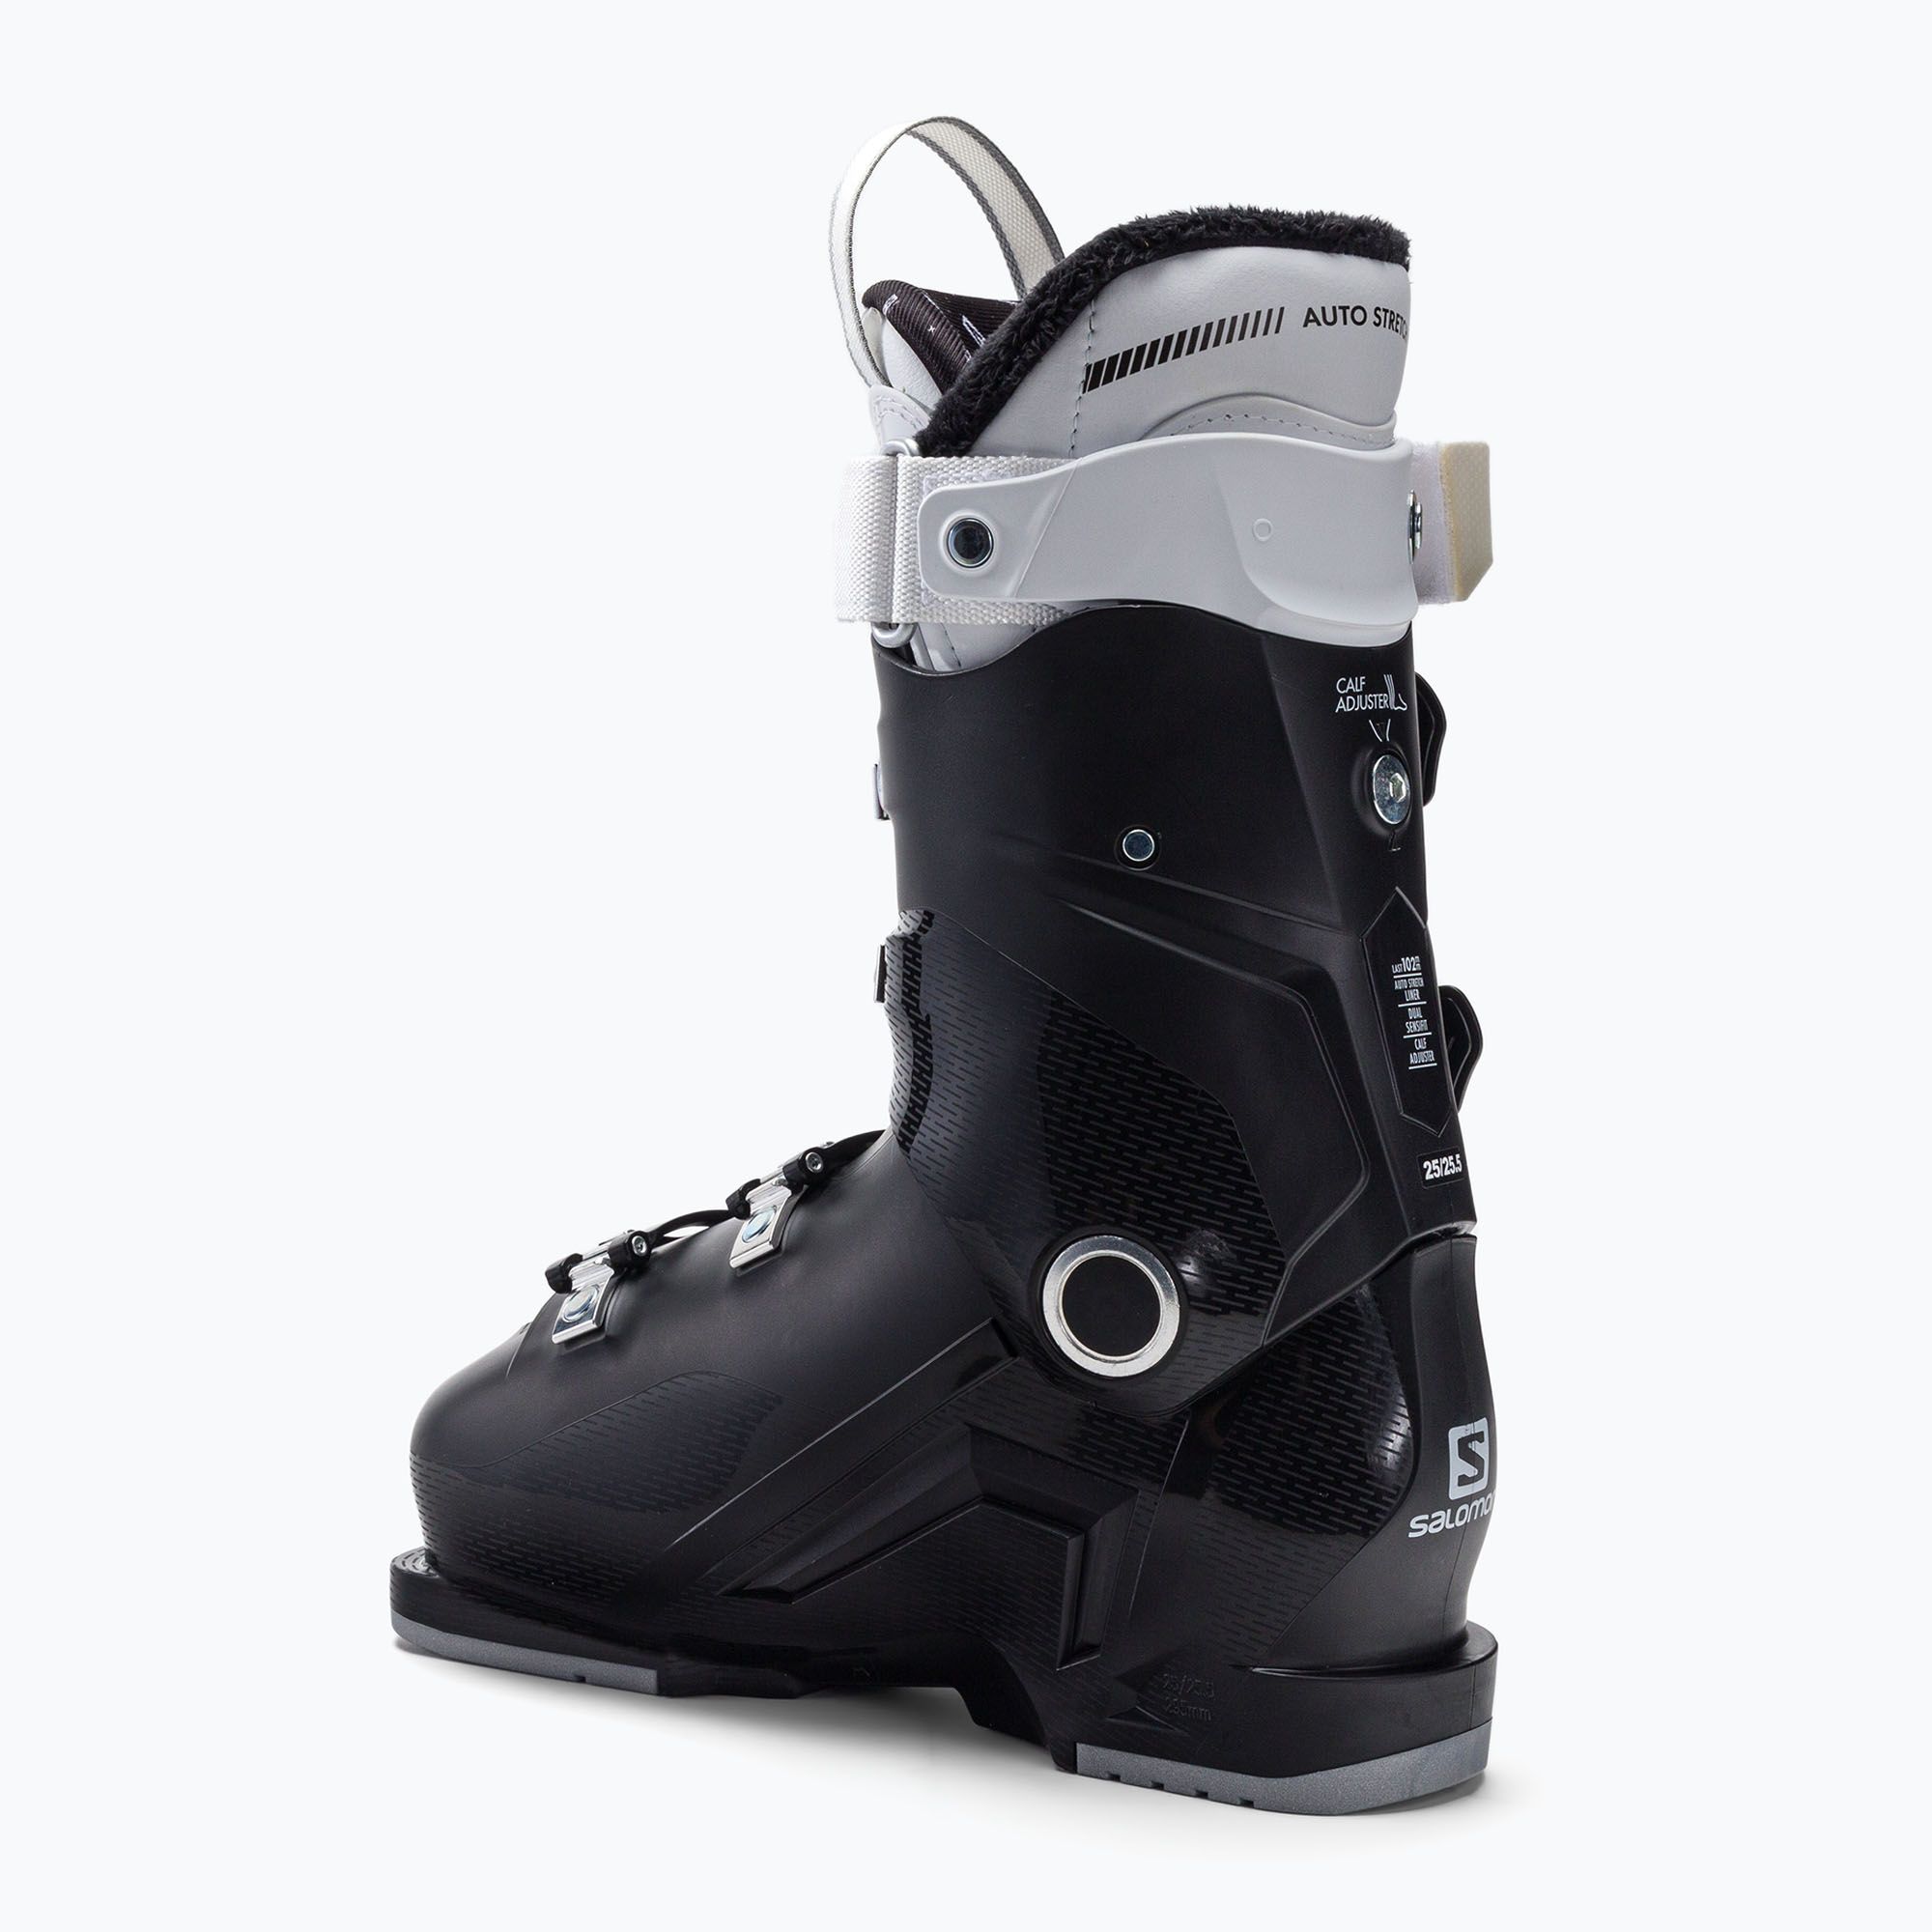 Buty narciarskie damskie Salomon Select Hv 70 W czarne L41500700 zdjęcie nr 3